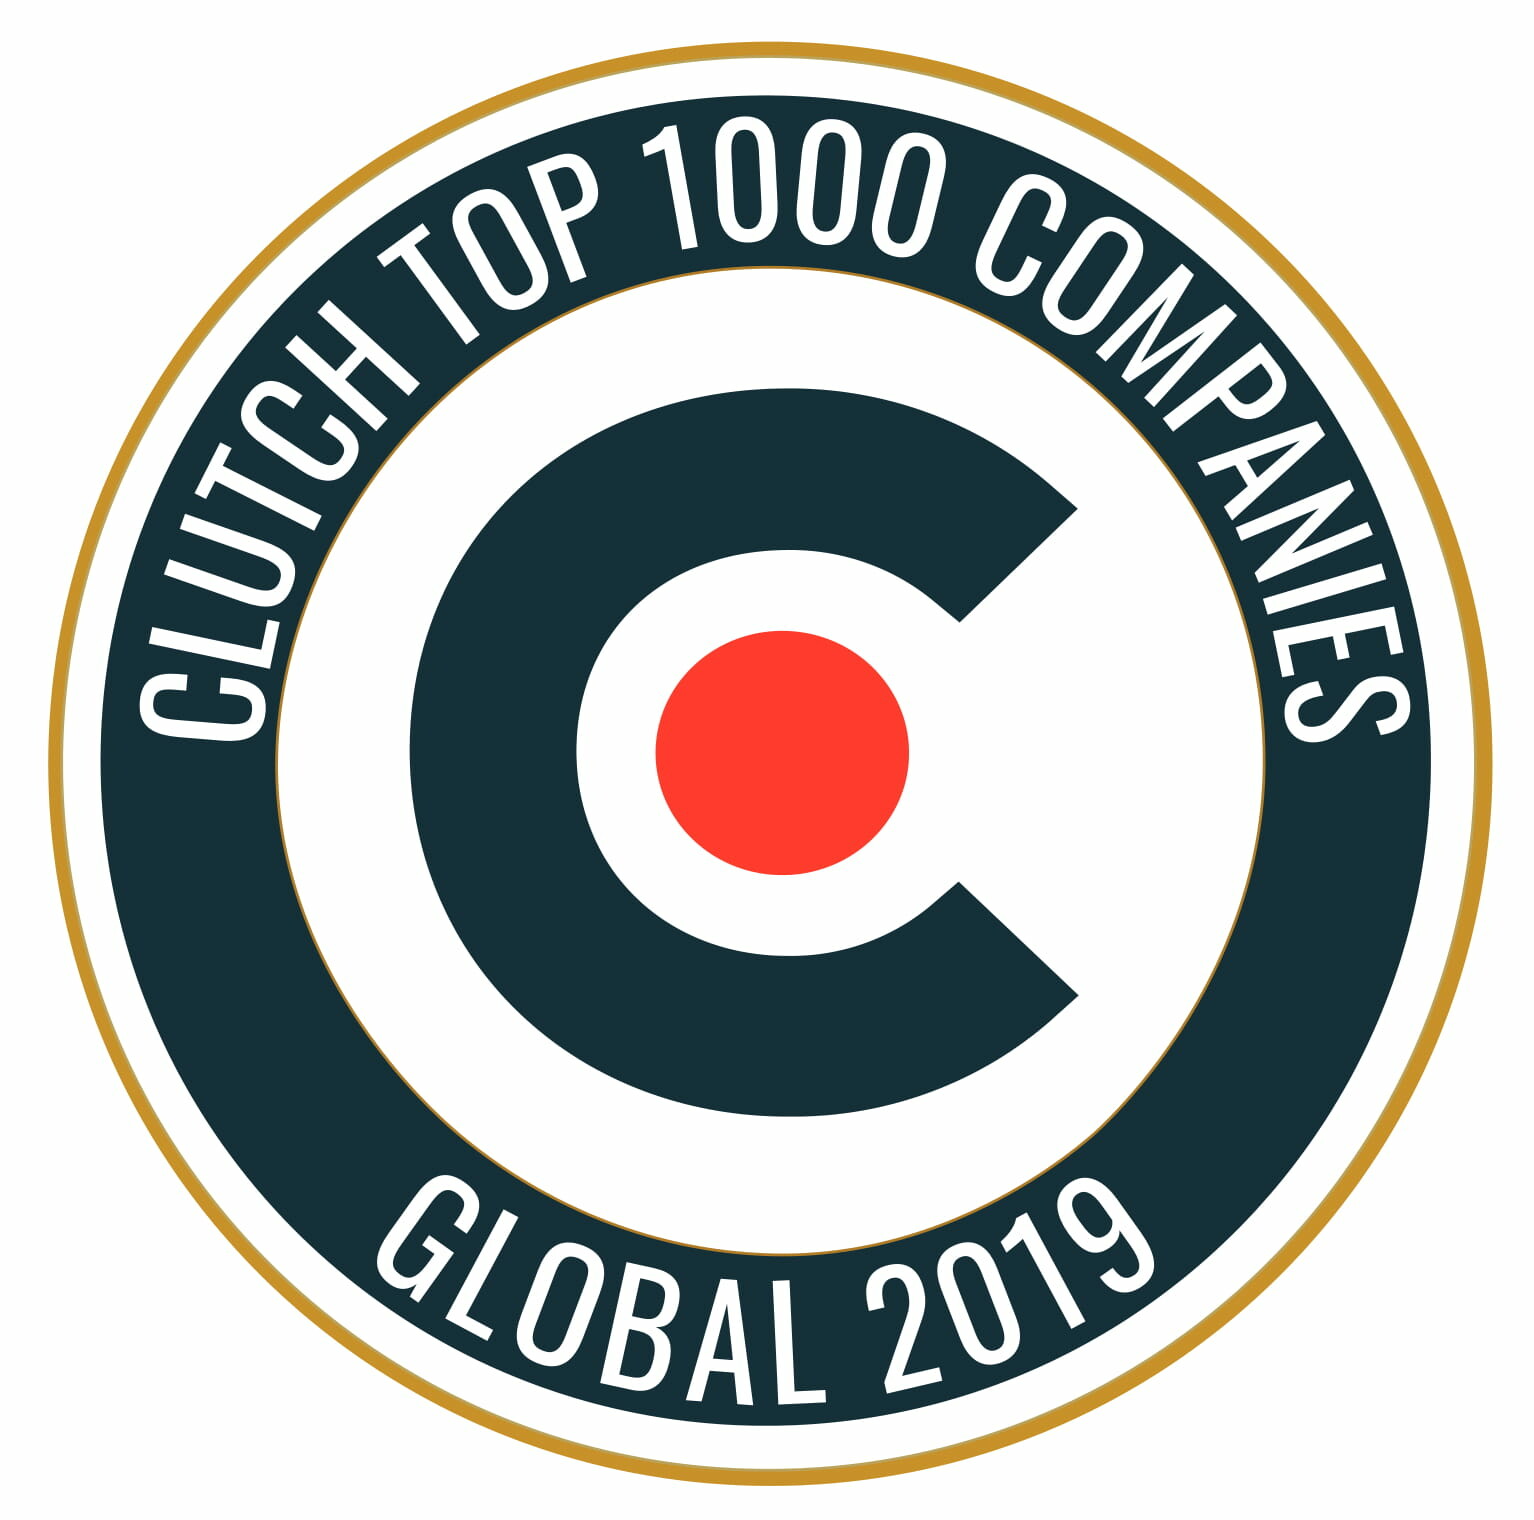 CodeWave  in 2019 Top 1000 Global companies ranking